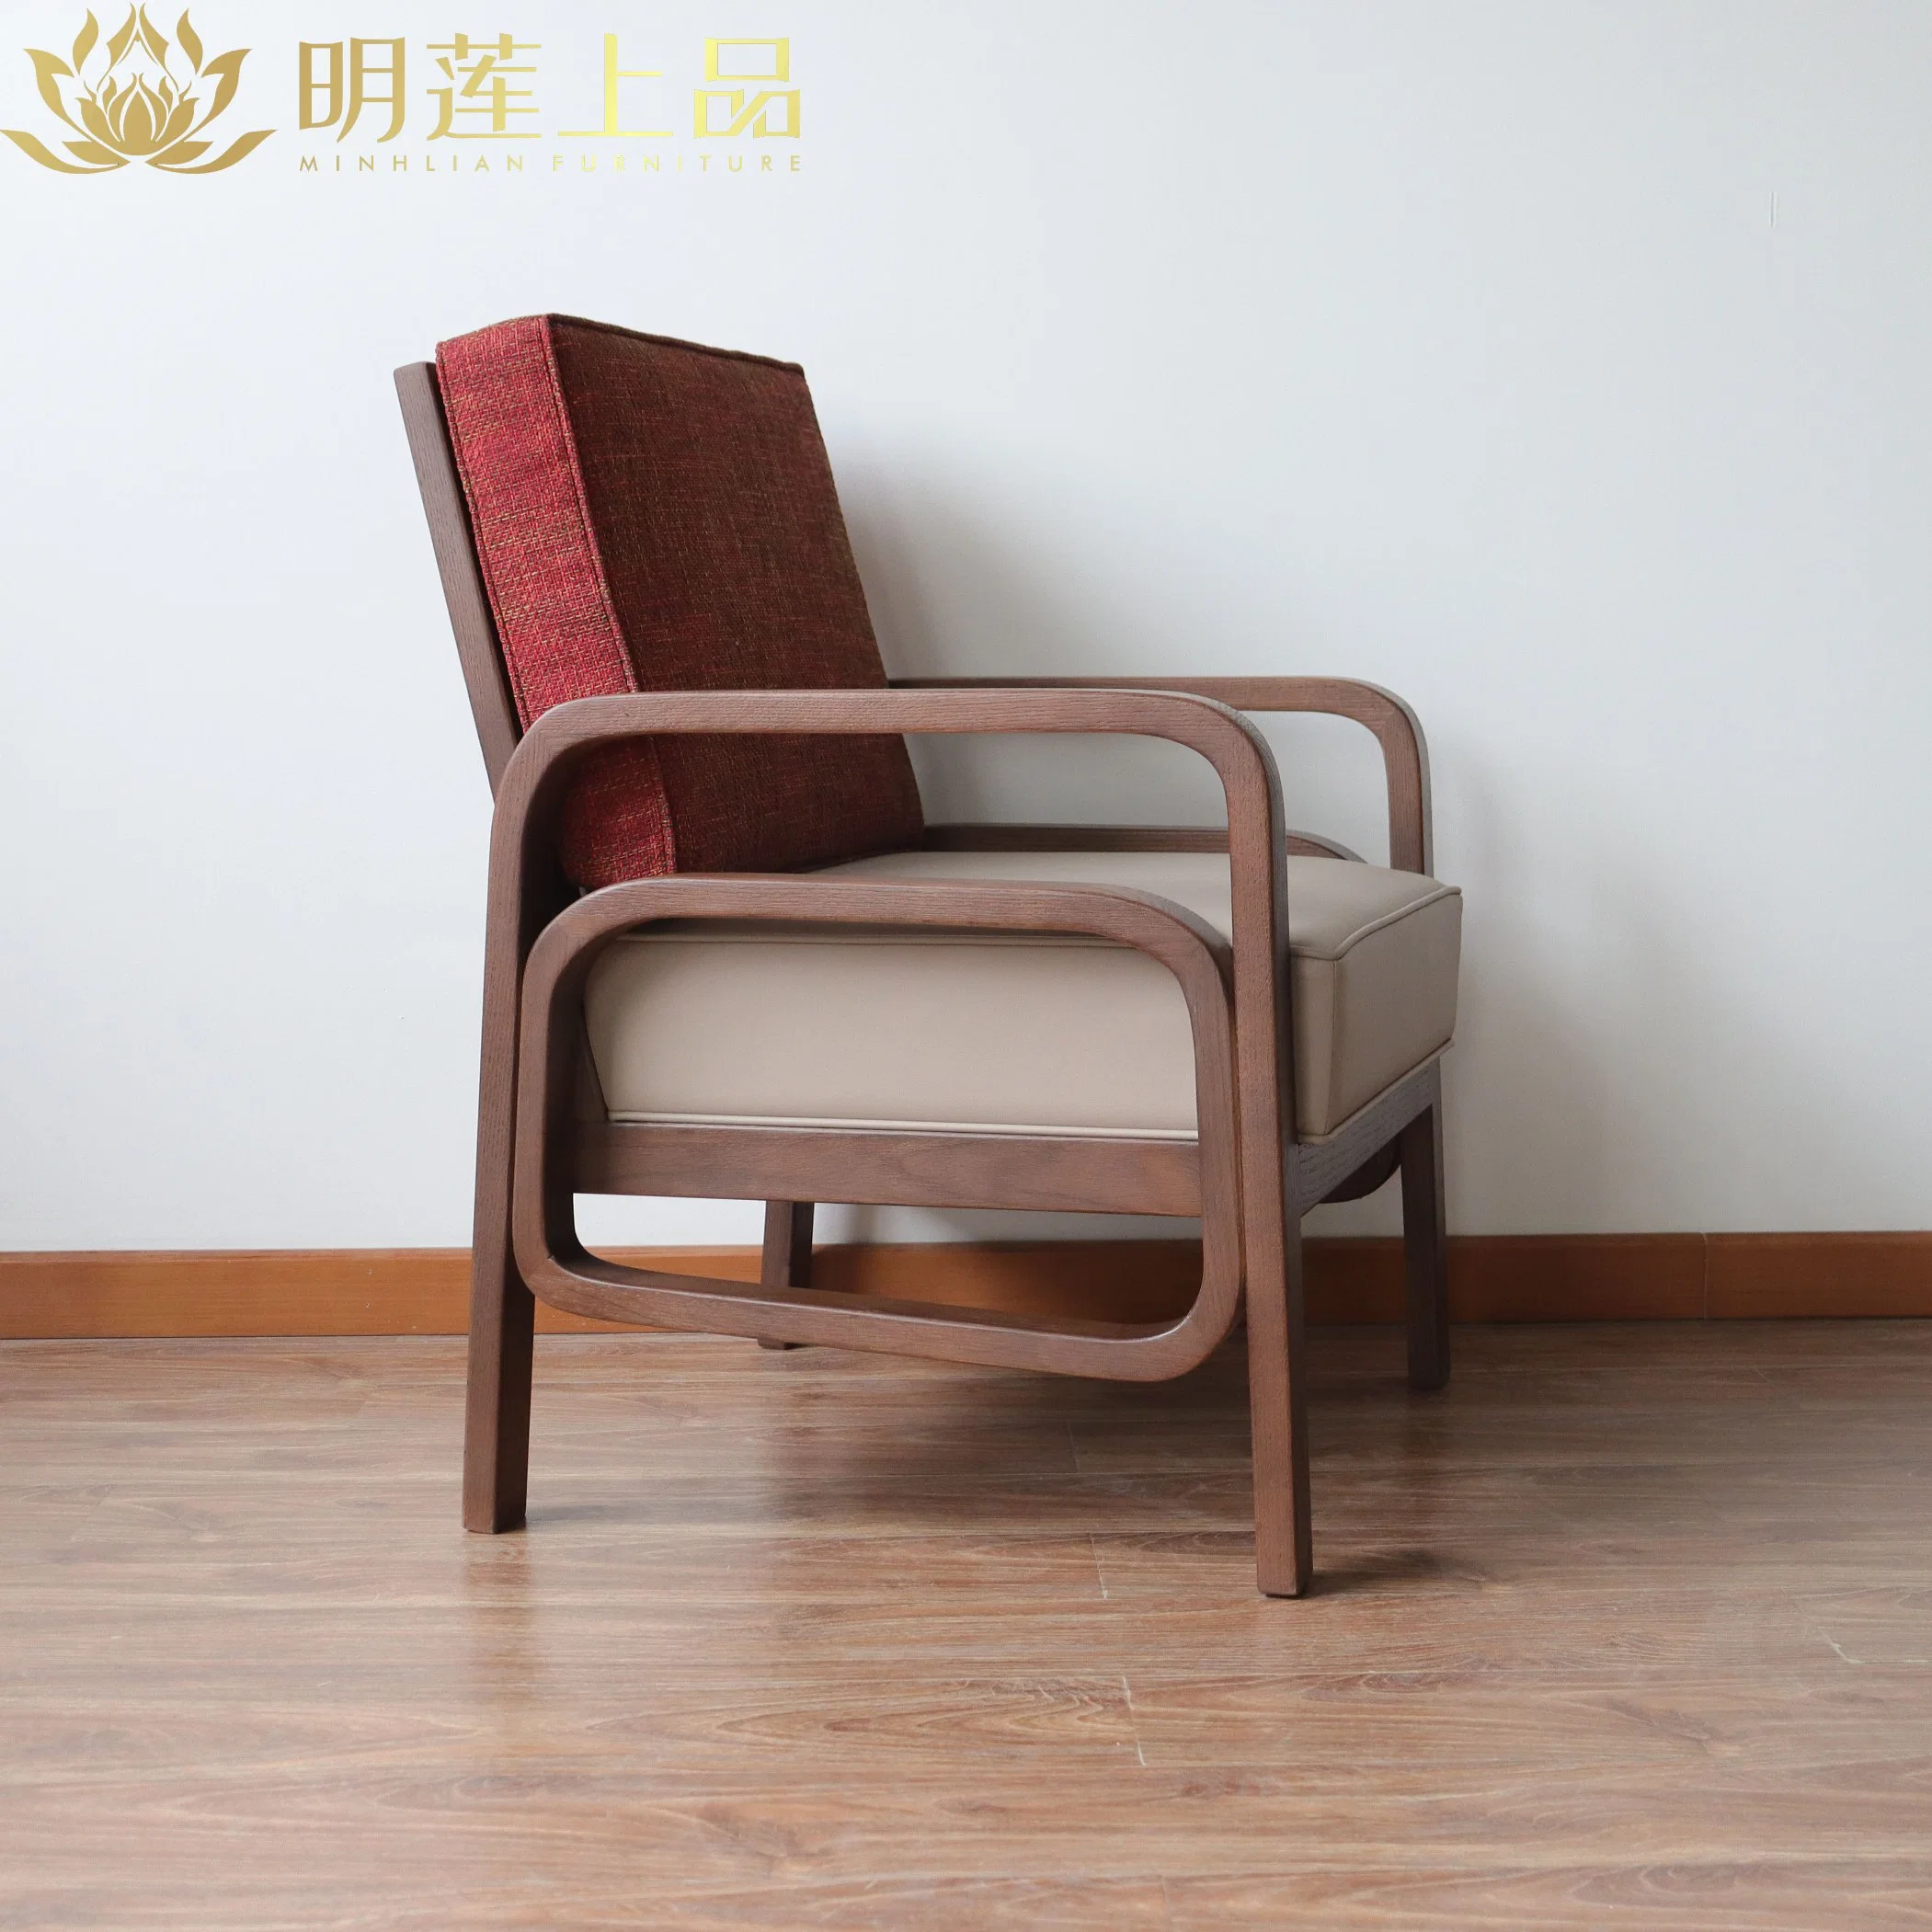 Современный дизайн цельной древесины гостиной стул Домашняя мебель отель мебели мягкой ткани холл для остальной части деревянных